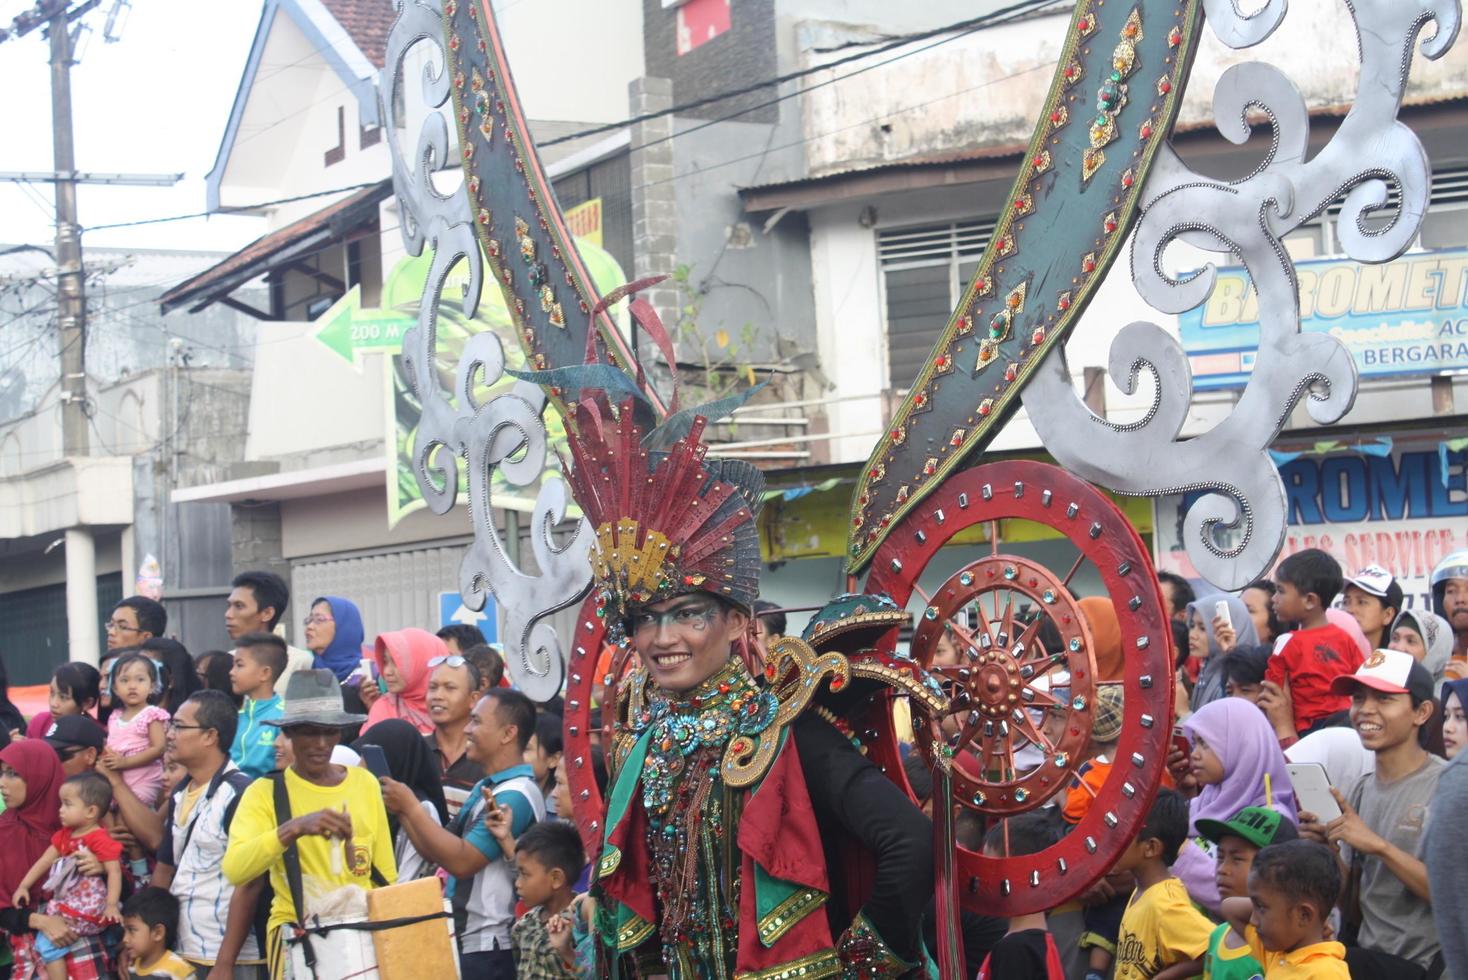 jember, Jawa timur, Indonésia - agosto 25, 2015 jember moda carnaval participantes estão dando seus melhor desempenho com seus fantasias e expressões durante a evento, seletivo foco. foto